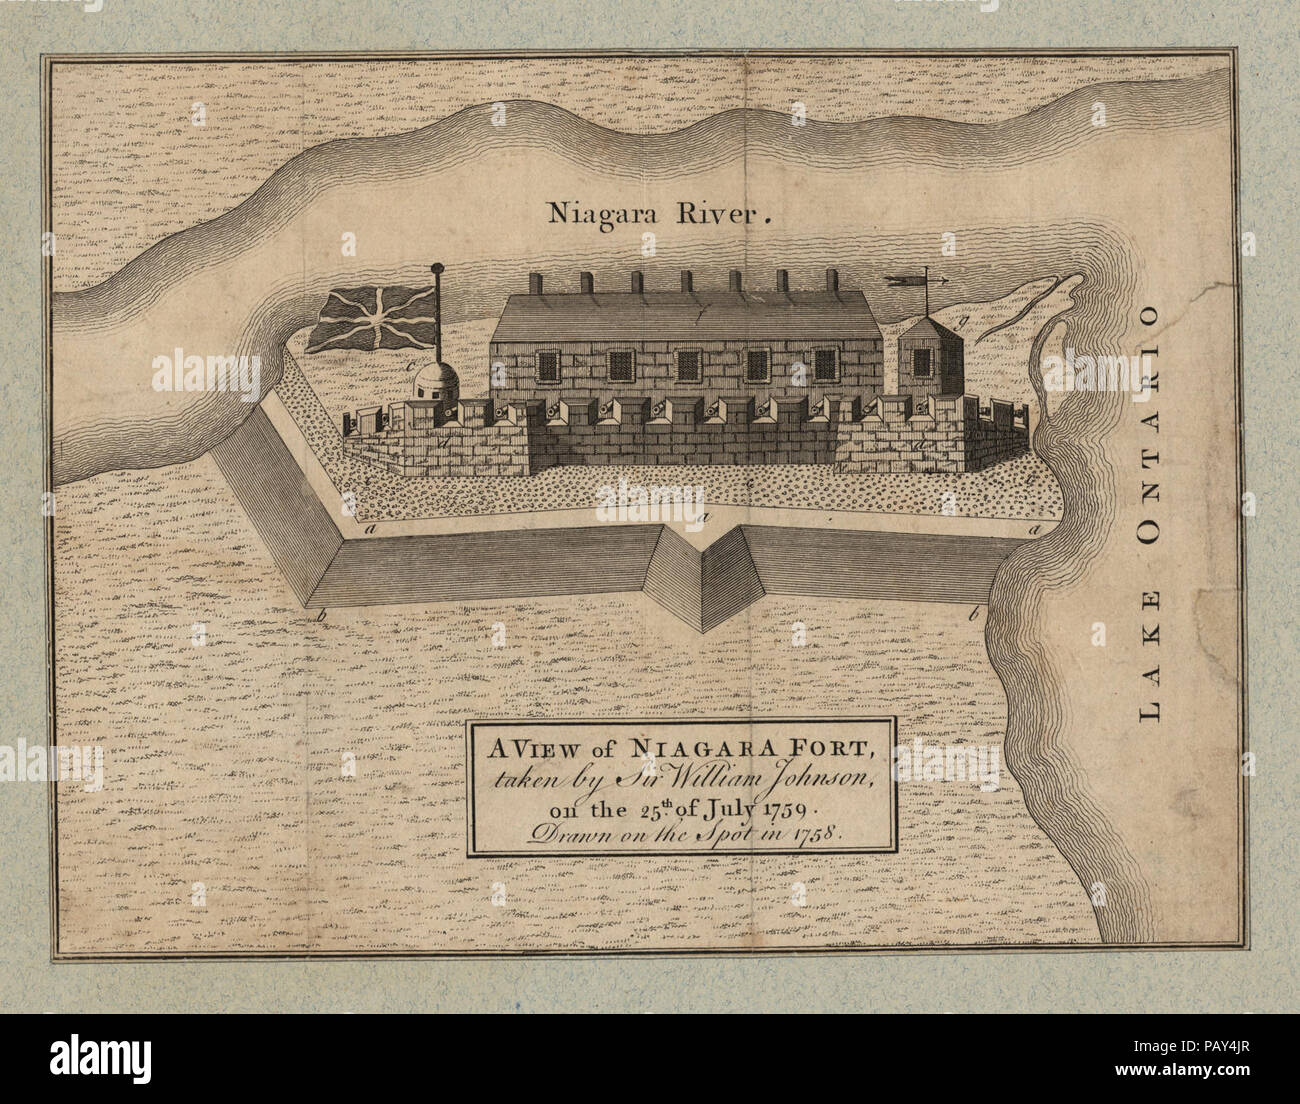 Una vista di Niagara Fort, presi da Sir William Johnson, il 25 luglio 1759, disegnato in loco nel 1758 Foto Stock